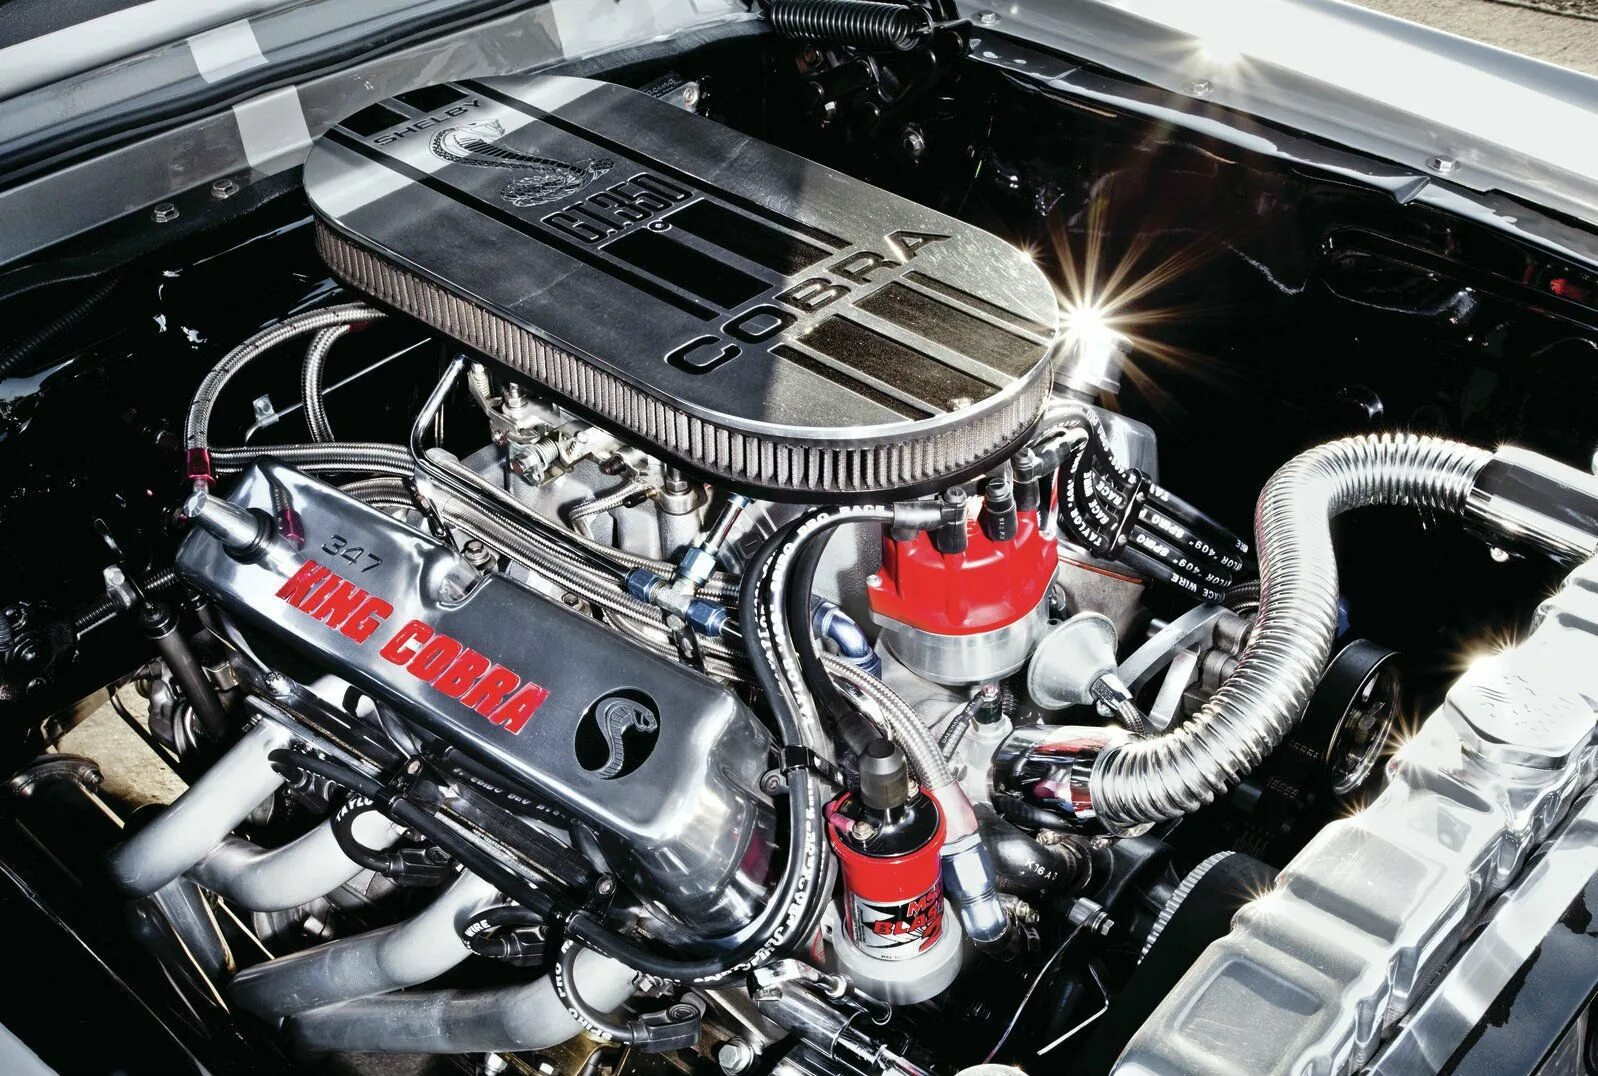 За 7 с двигатель автомобиля. Форд Мустанг мотор. Форд Мустанг двигатель 7.0. Двигатель Ford Mustang. Ford Mustang 1968 engine.